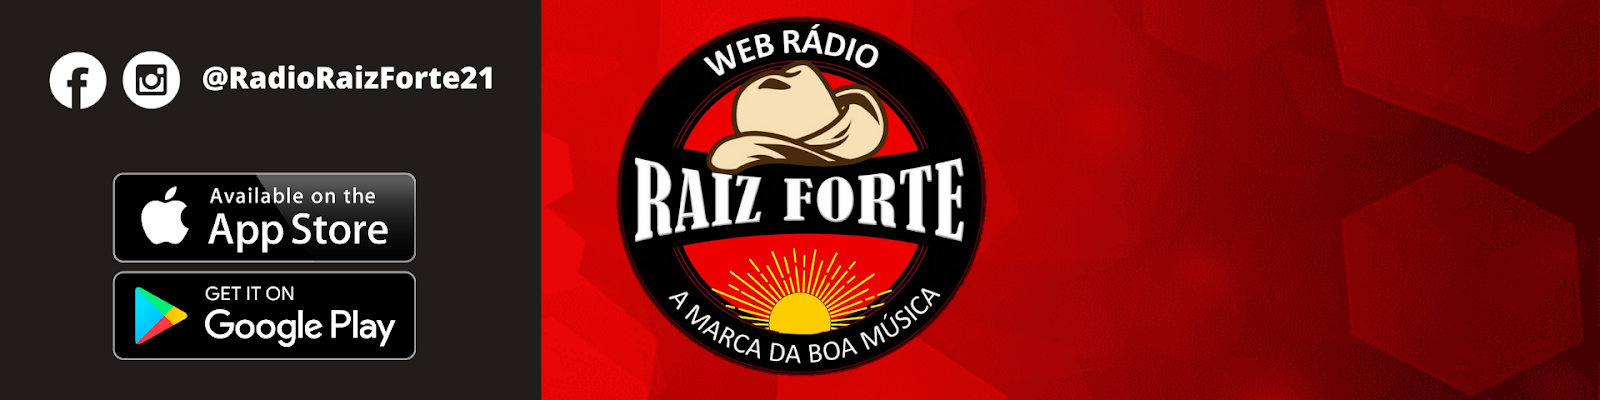 Rádio Raiz Forte - A marca da boa música! | Valparaíso/SP